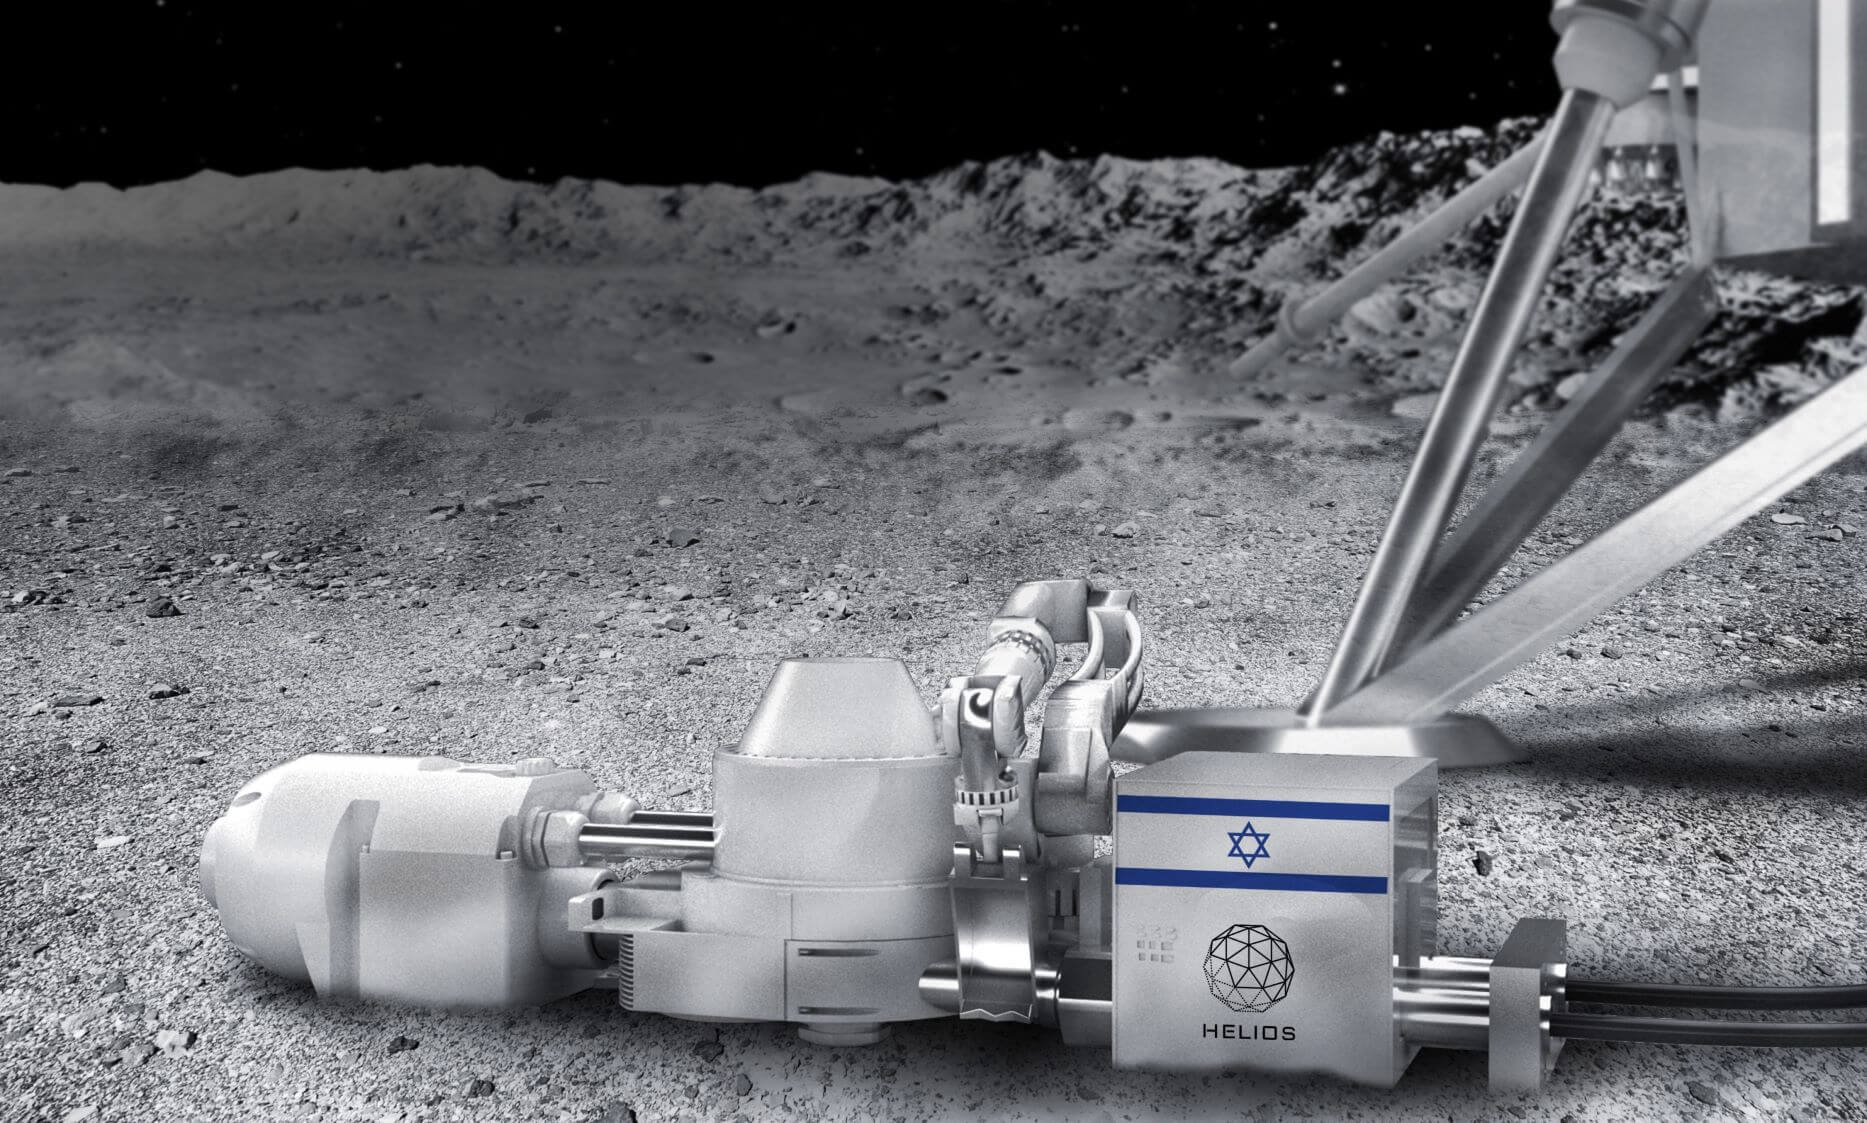 הדמיית הפקת חמצן ומתכושת על הירח. באדיבות הליוס